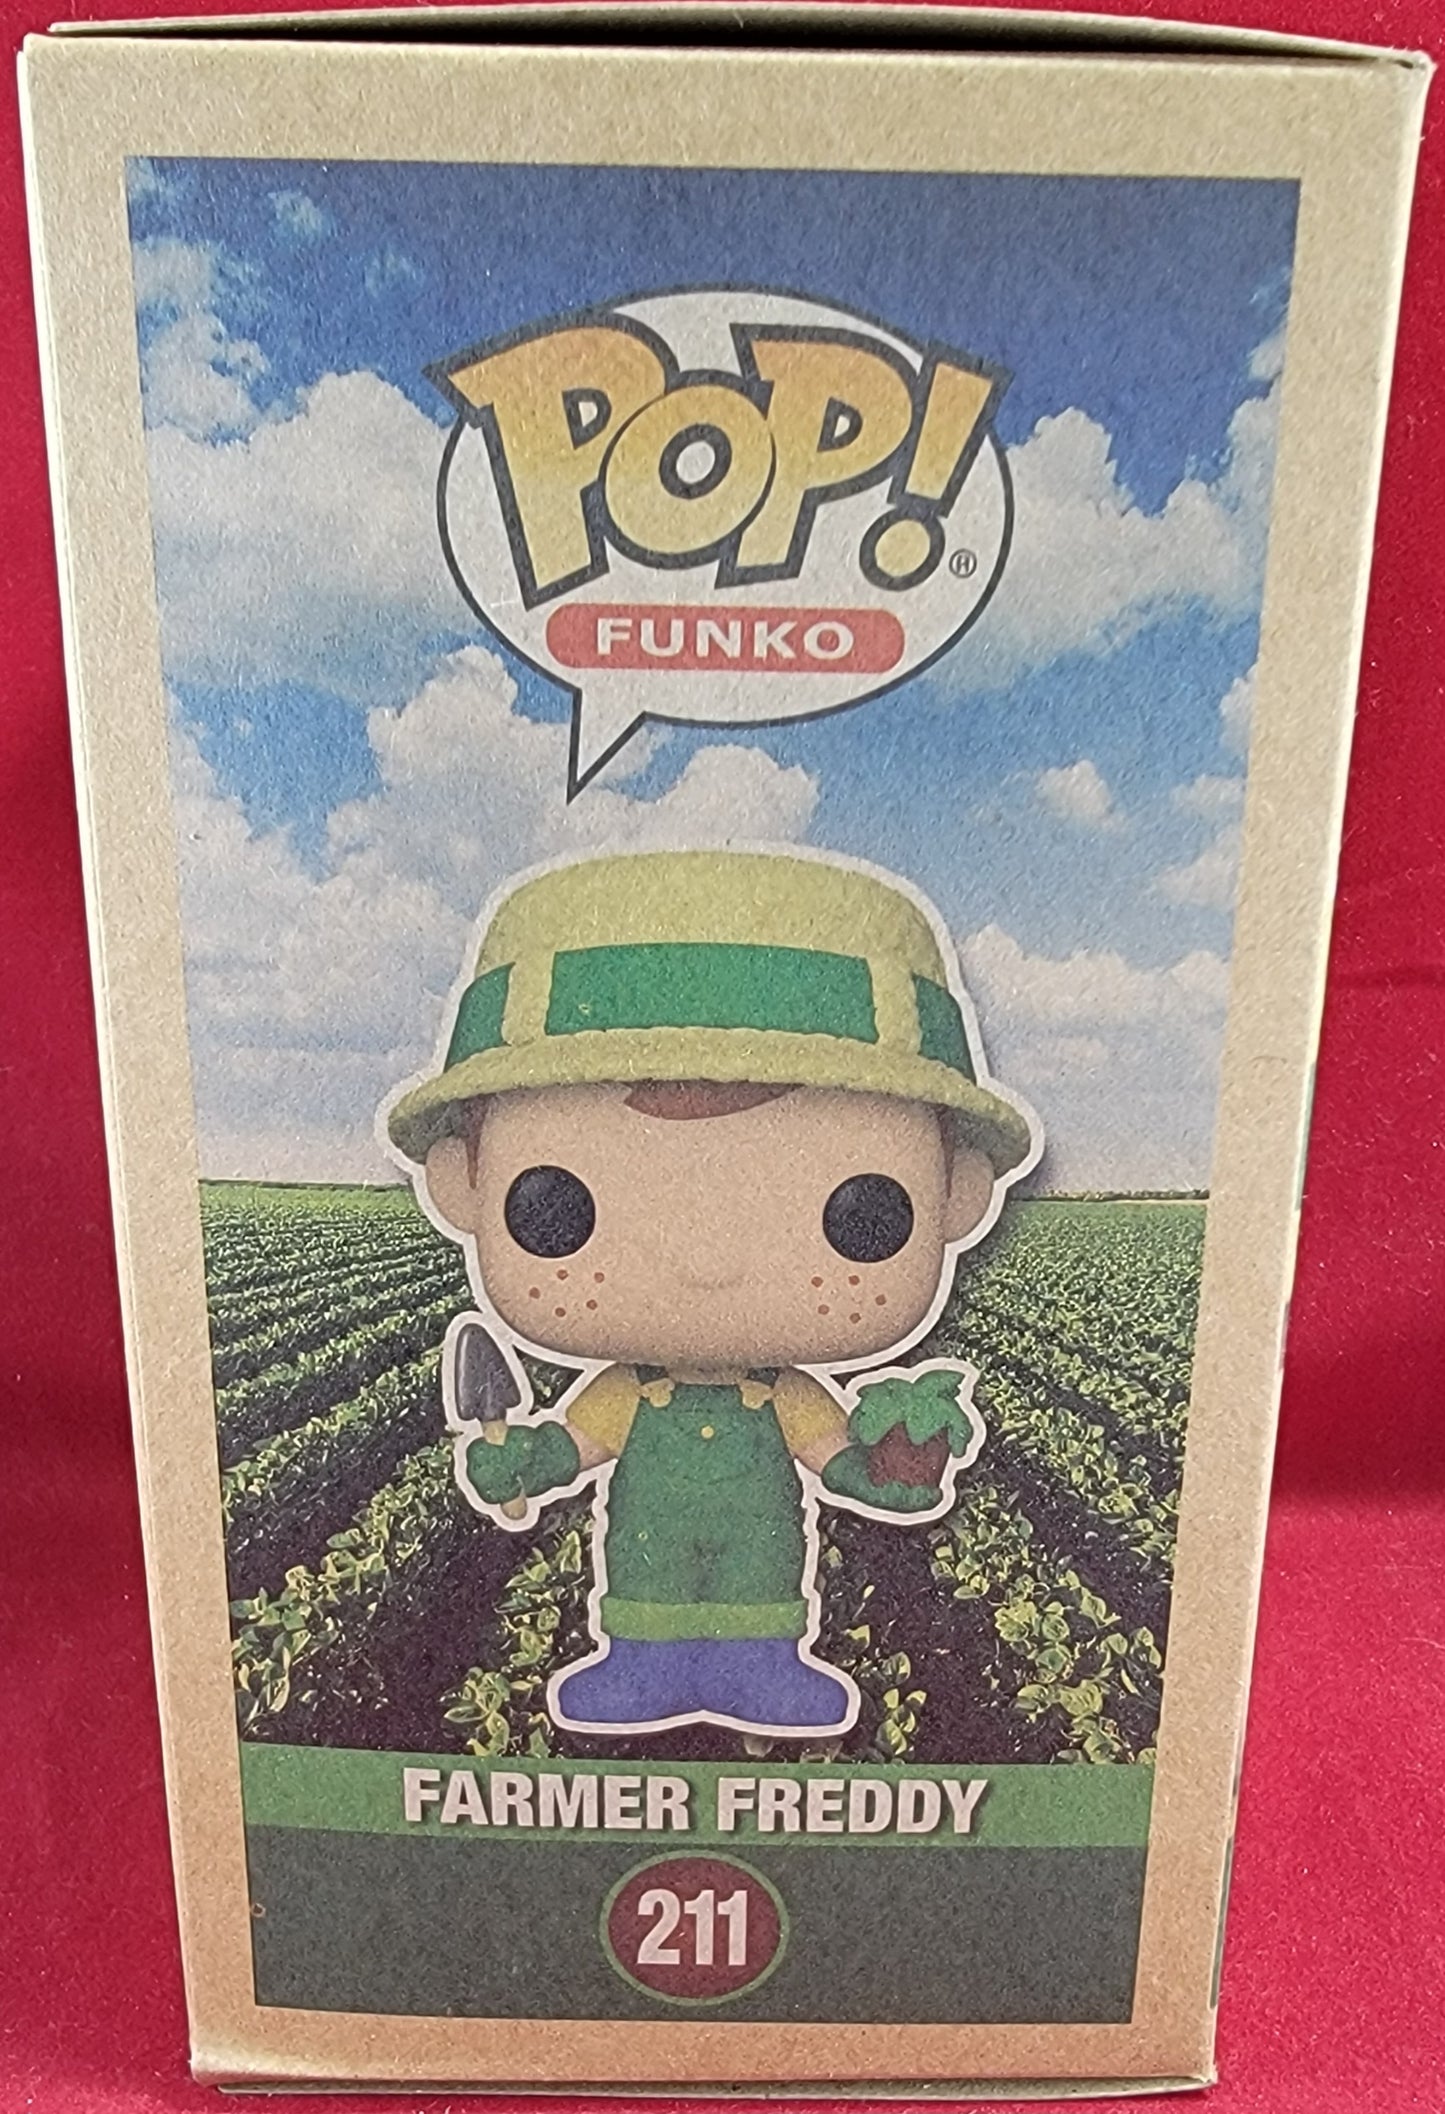 Farmer freddy funko exclusive # 211 (nib)
With pop protector